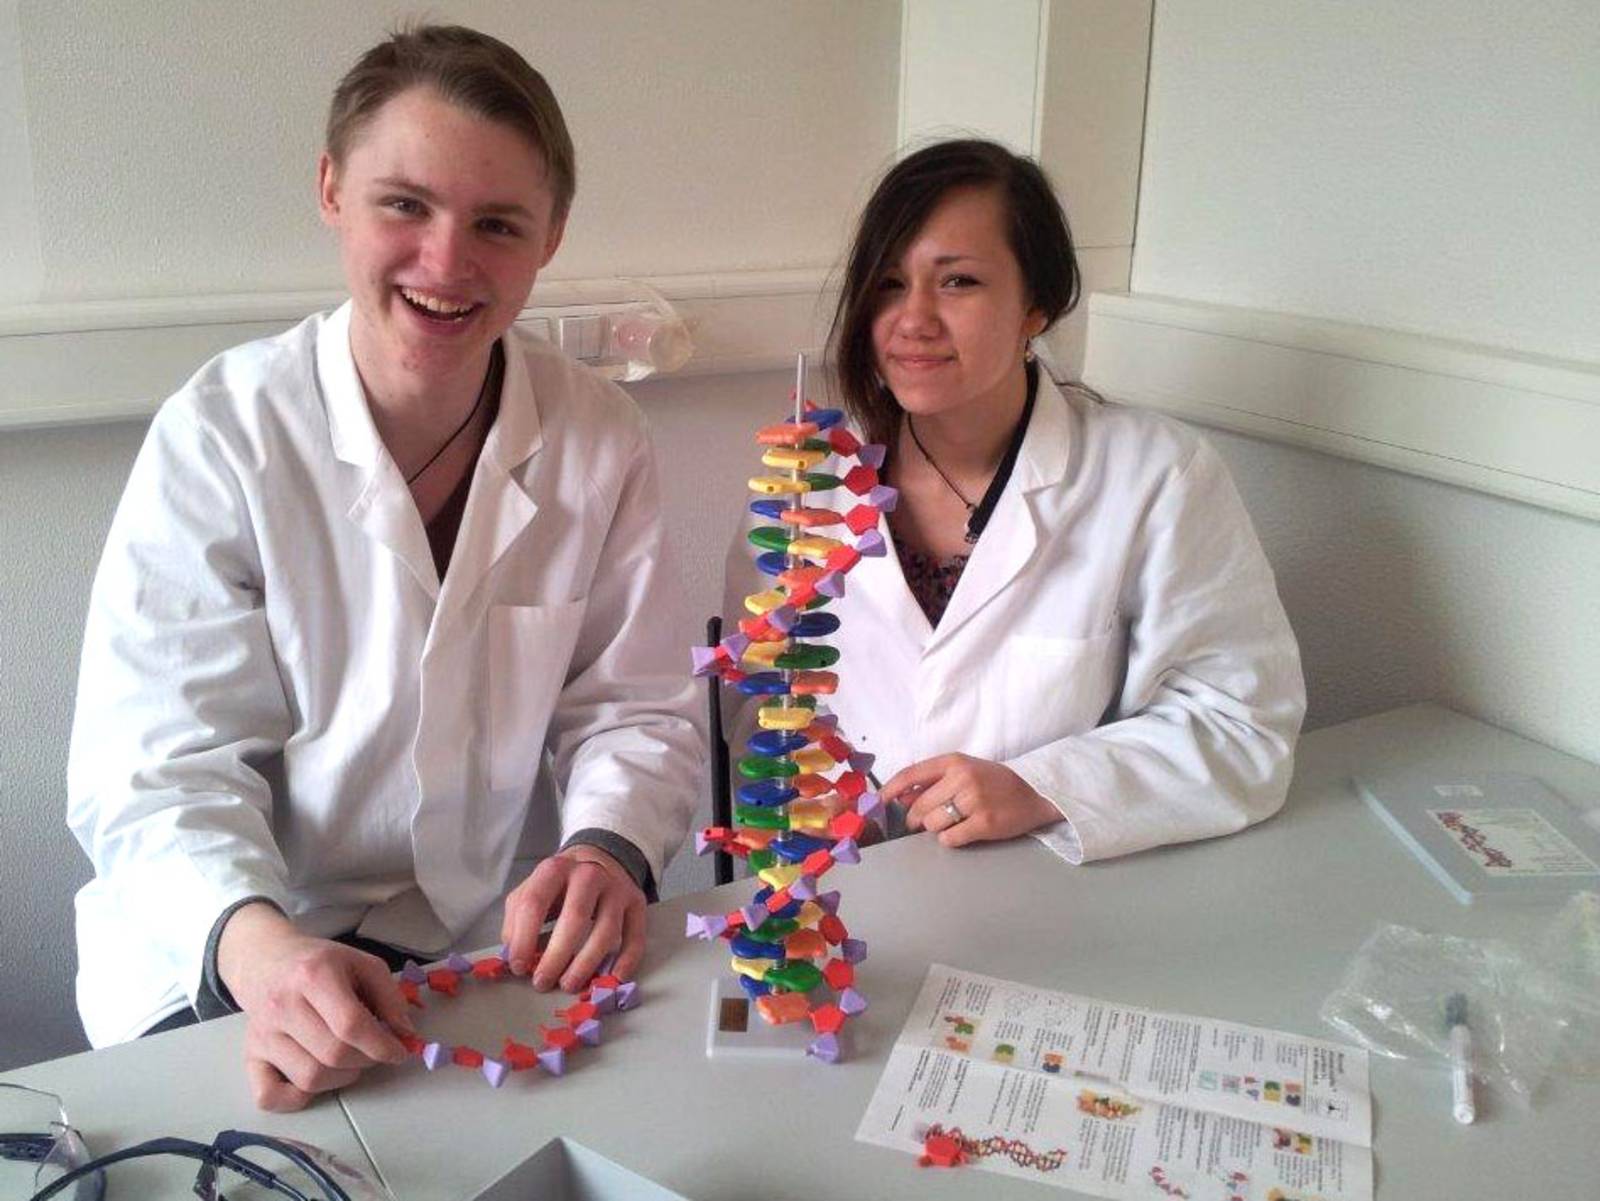 Erster Labortag "DNA entdecken", SchülerInnen der Helene-Lange-Schule